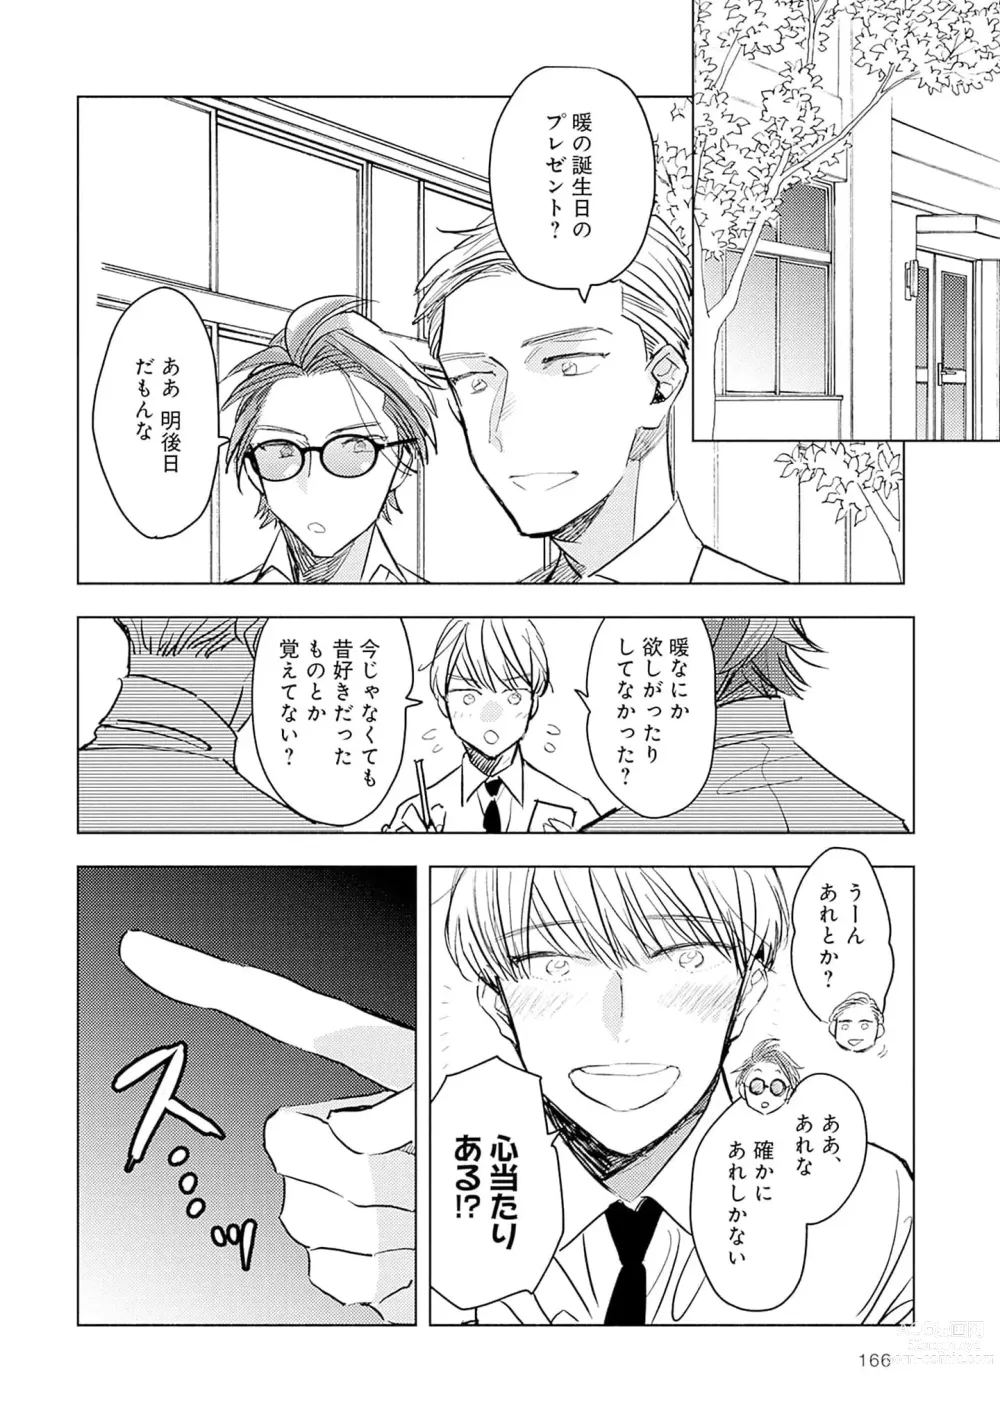 Page 168 of manga Strawberry na Days 2